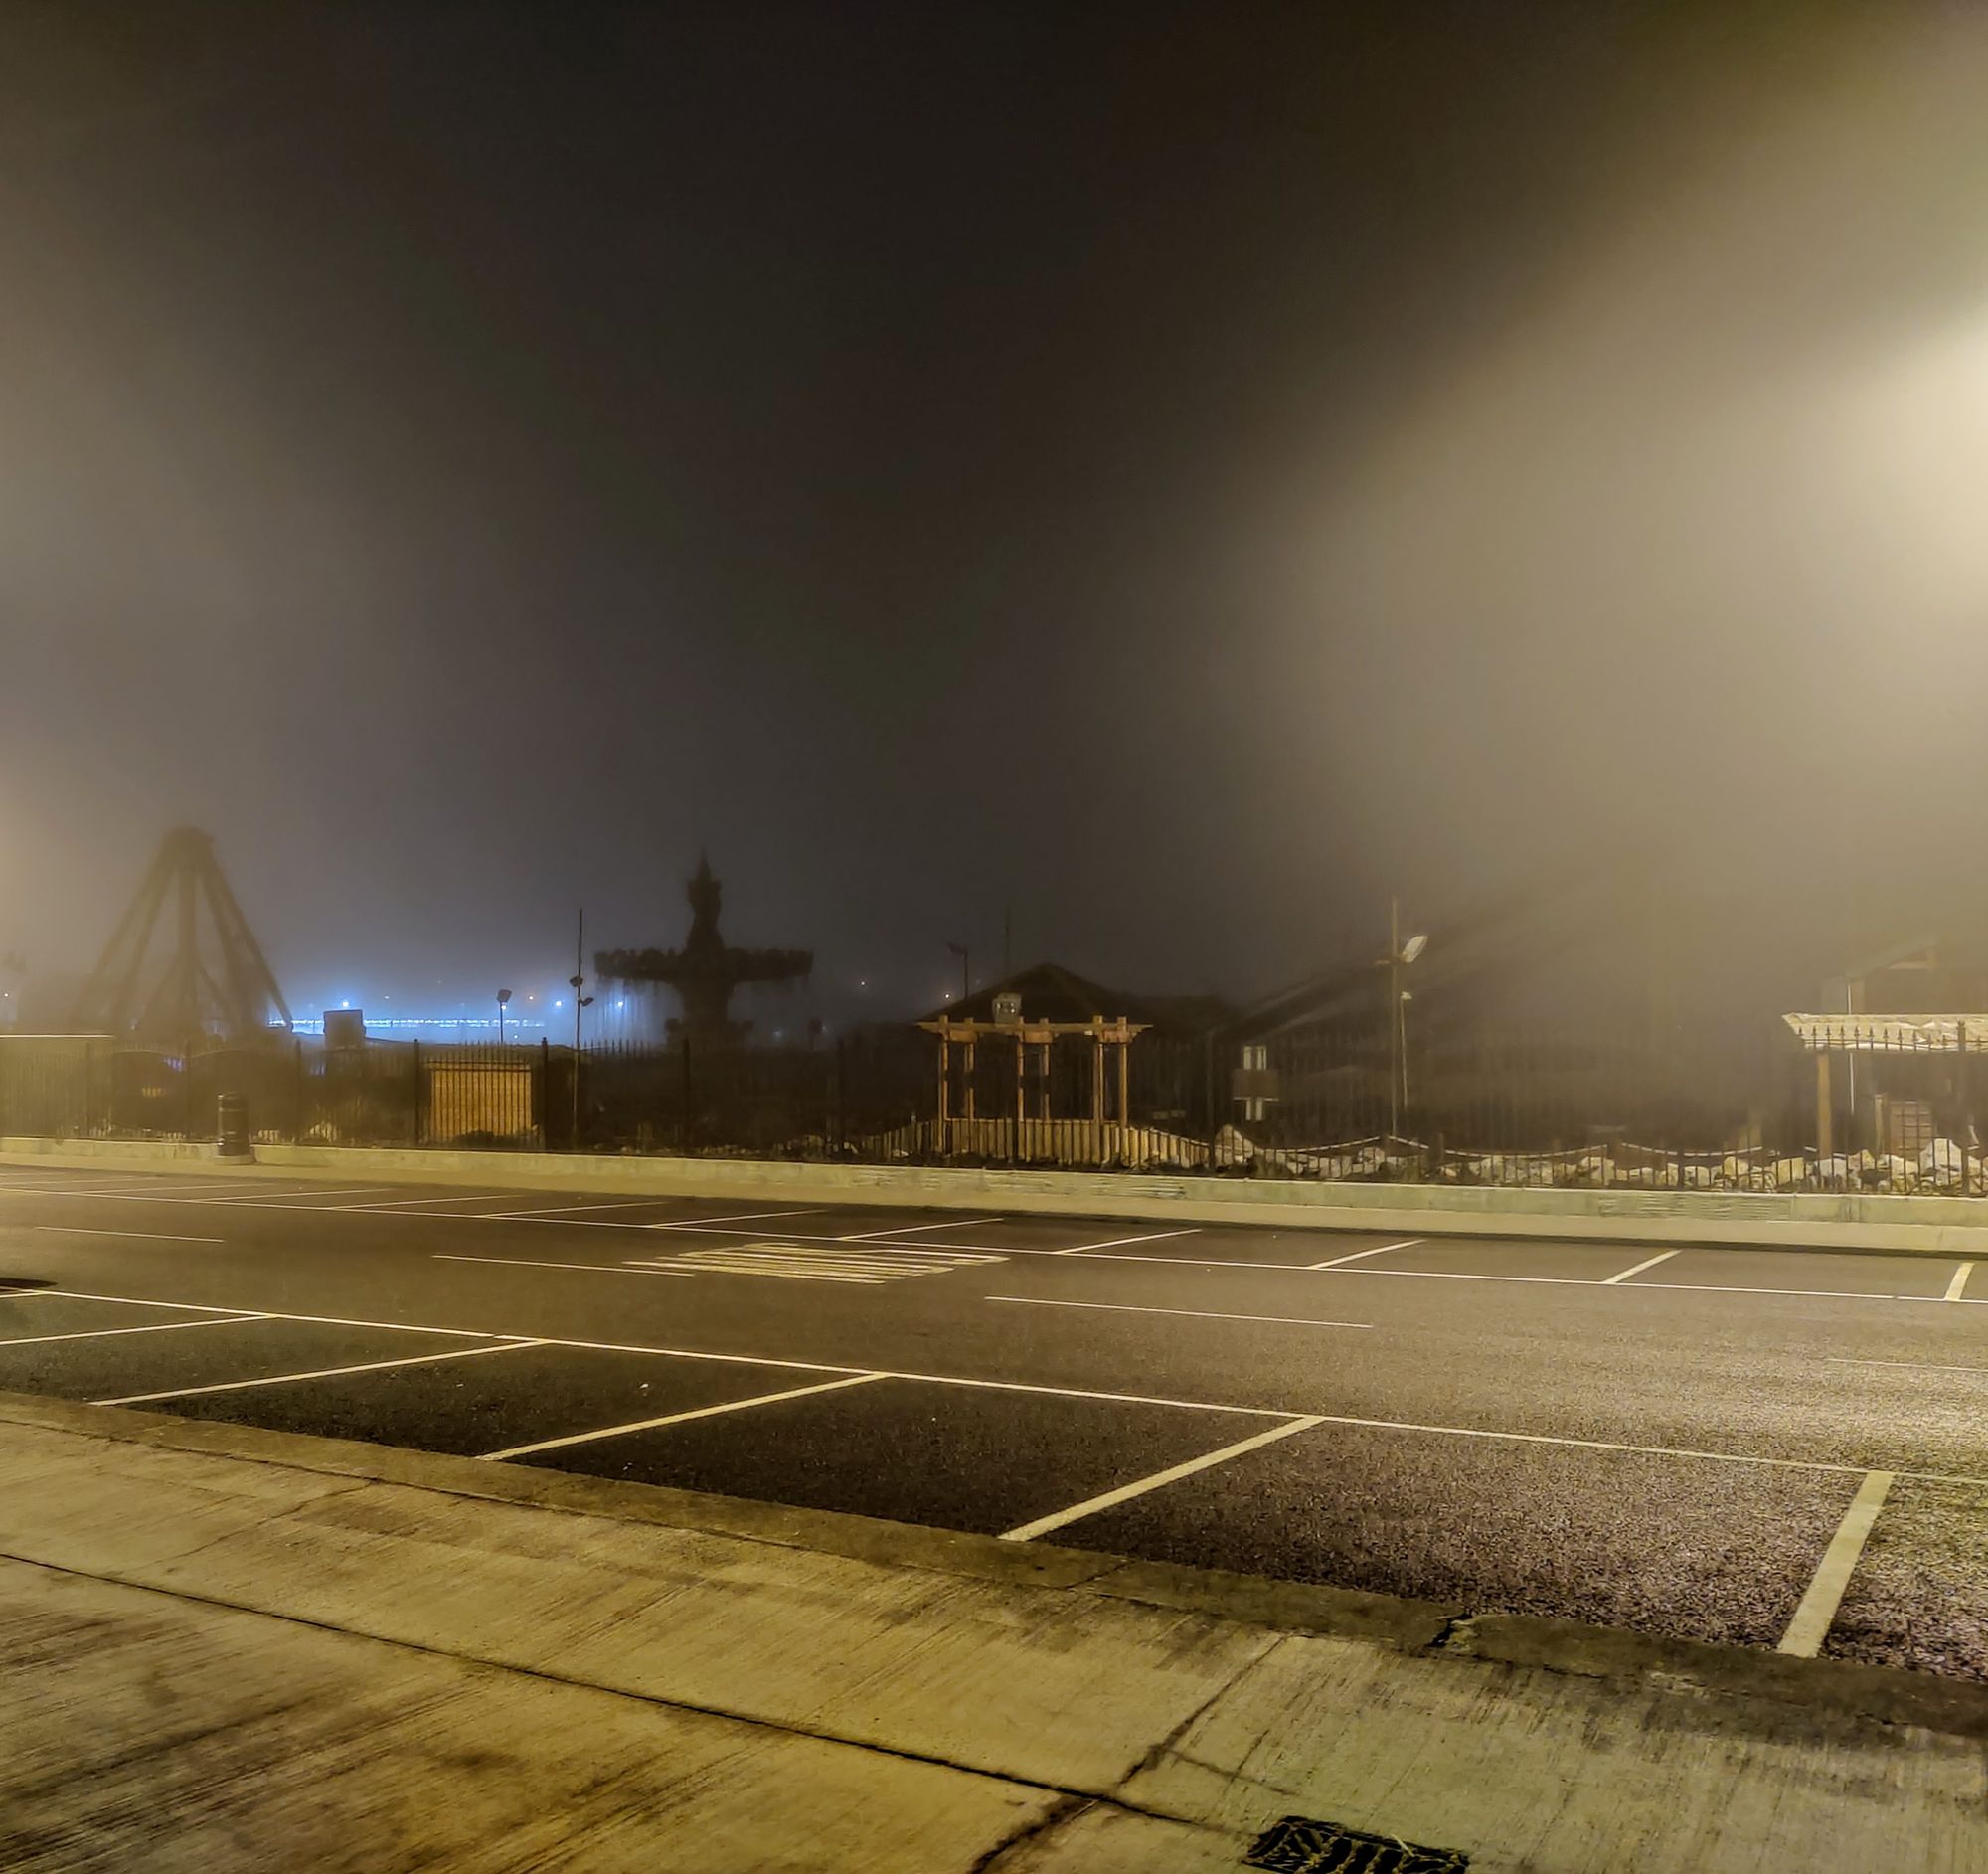 Nieduża ulica w nocy, pokryta mgłą. W tle widać szkielety rzeczy, znajdujących się w nieczynnym wesołym miasteczku. Jest wilgotno, ciemno i pusto.